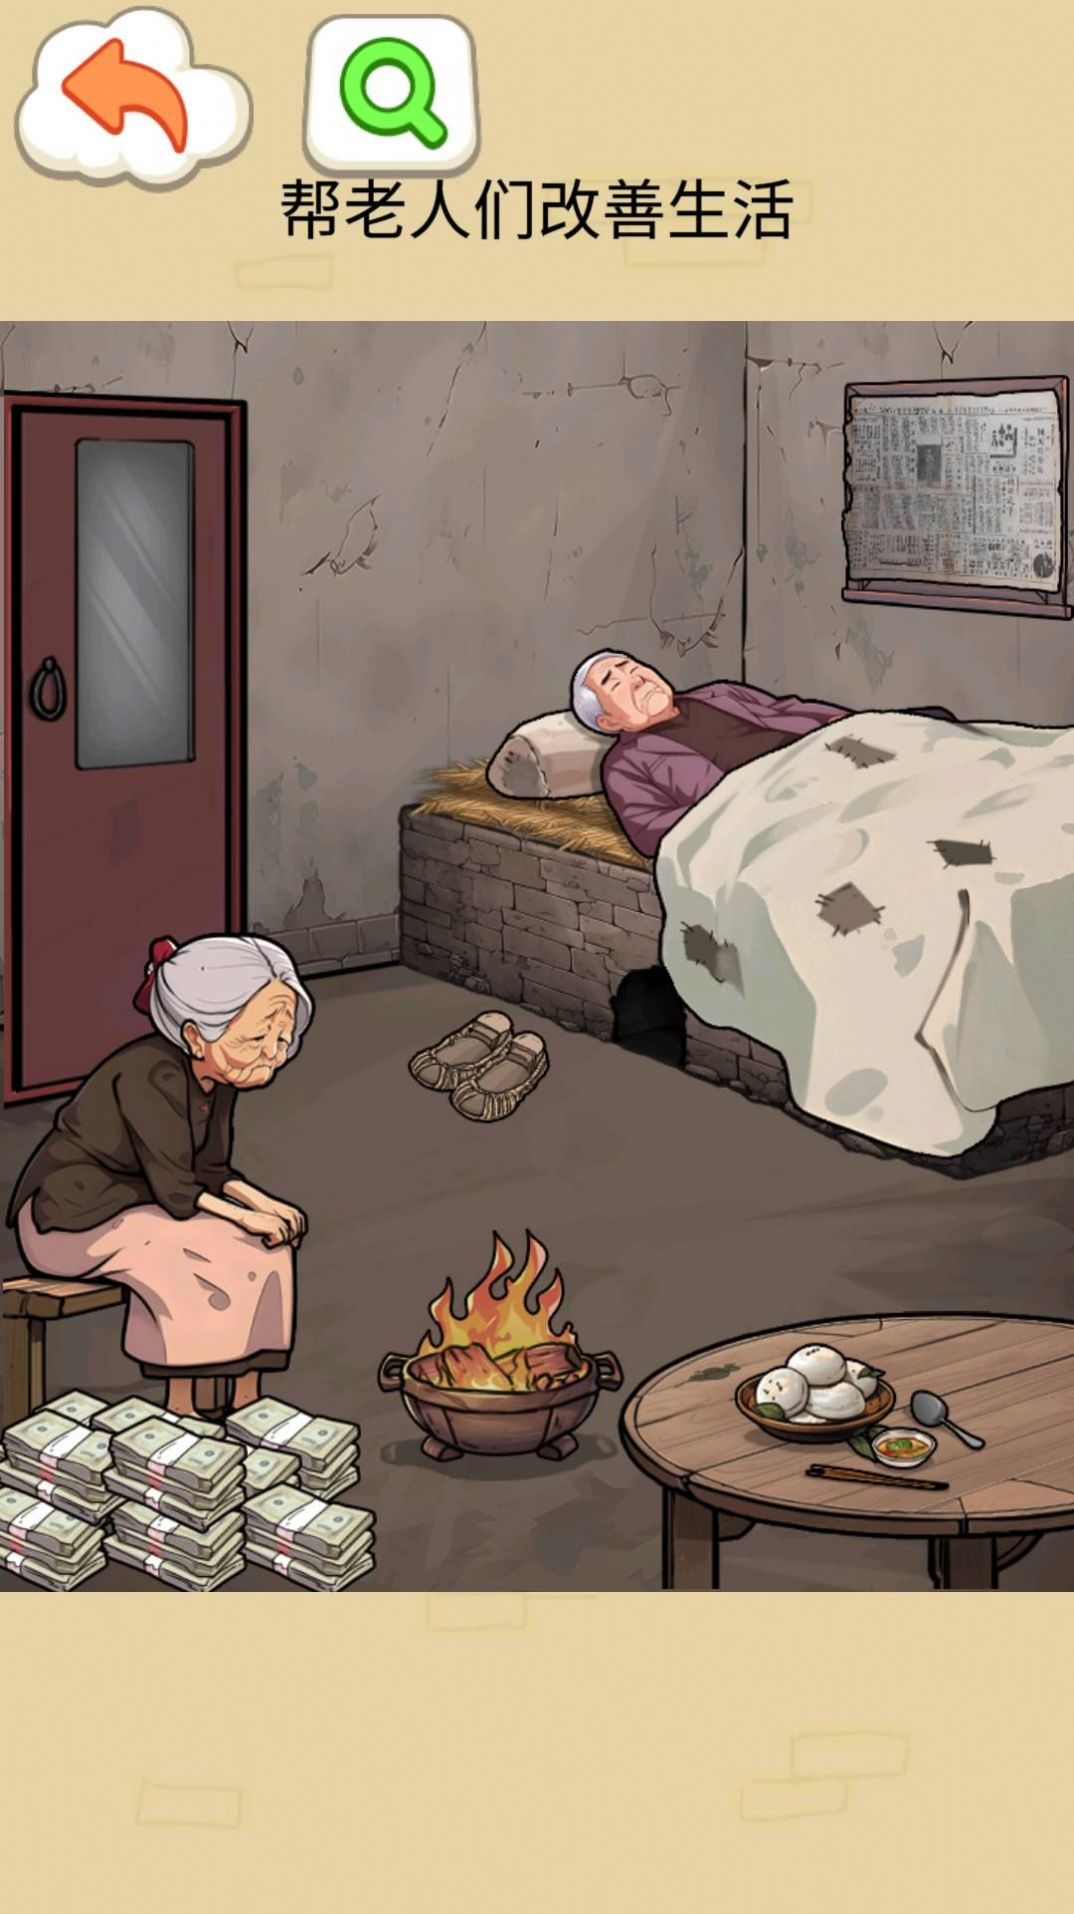 改善老人生活条件游戏官方版图片1